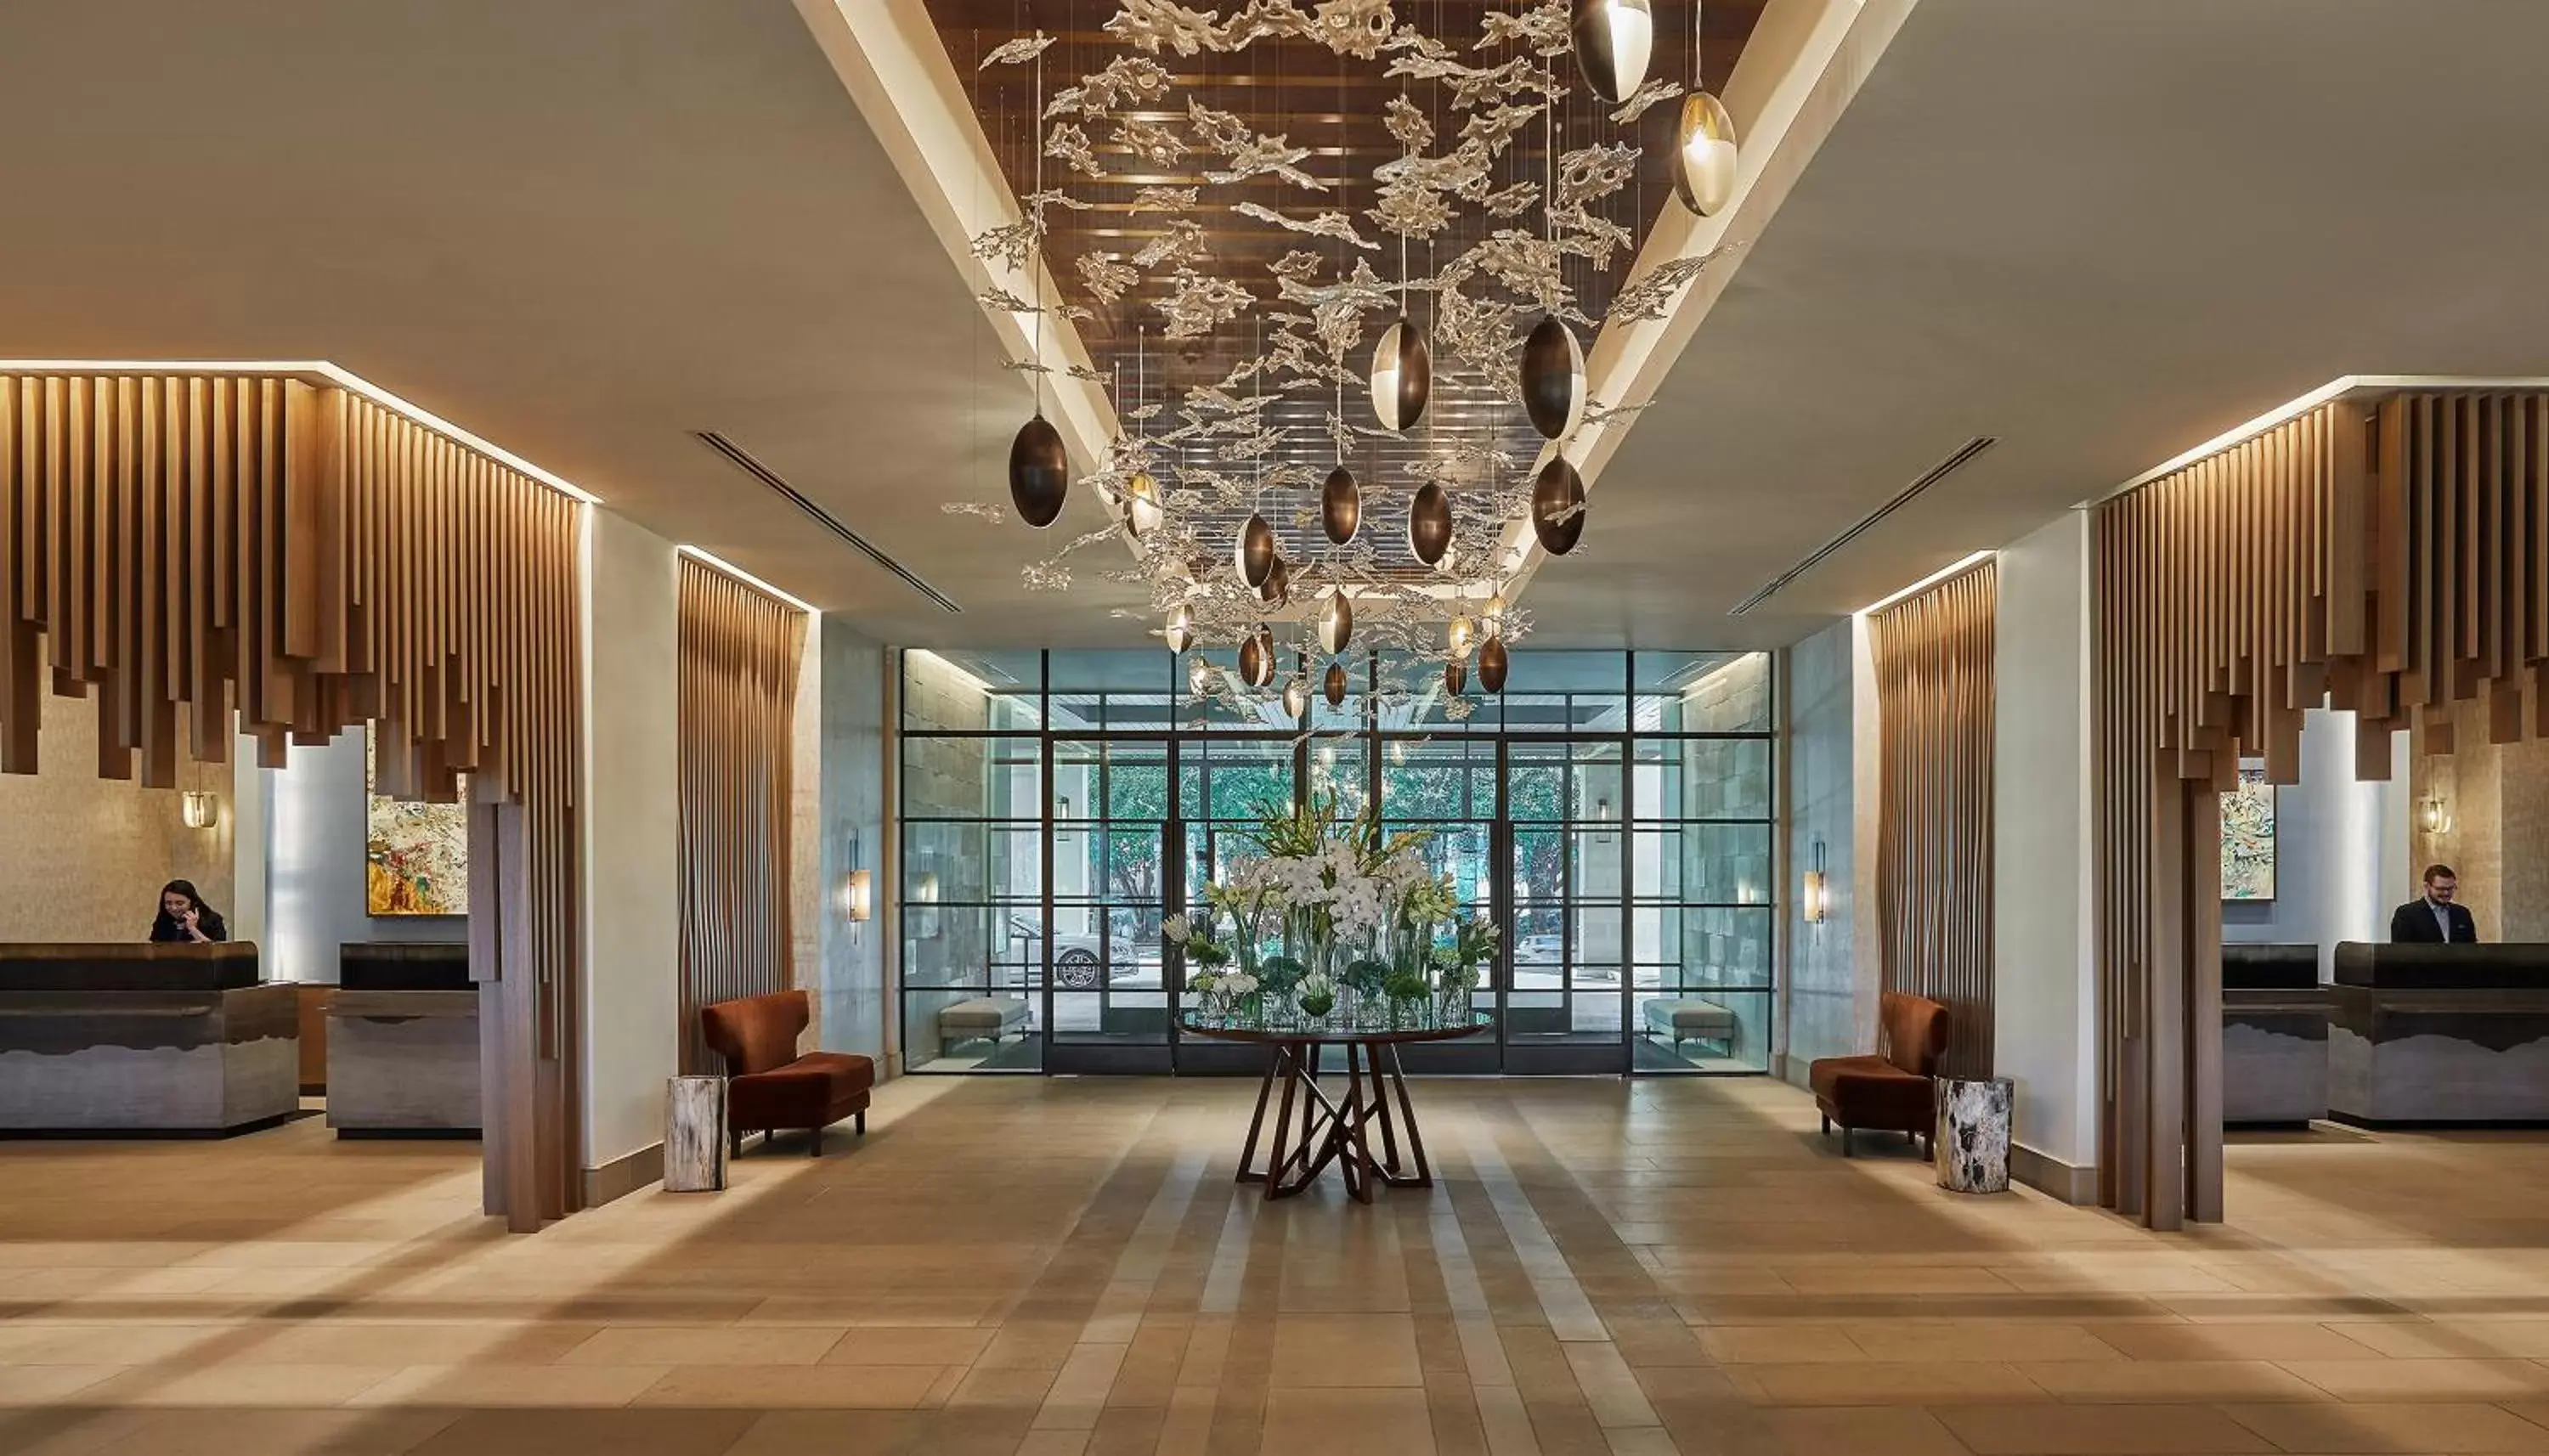 Lobby or reception, Lobby/Reception in Four Seasons Hotel Austin